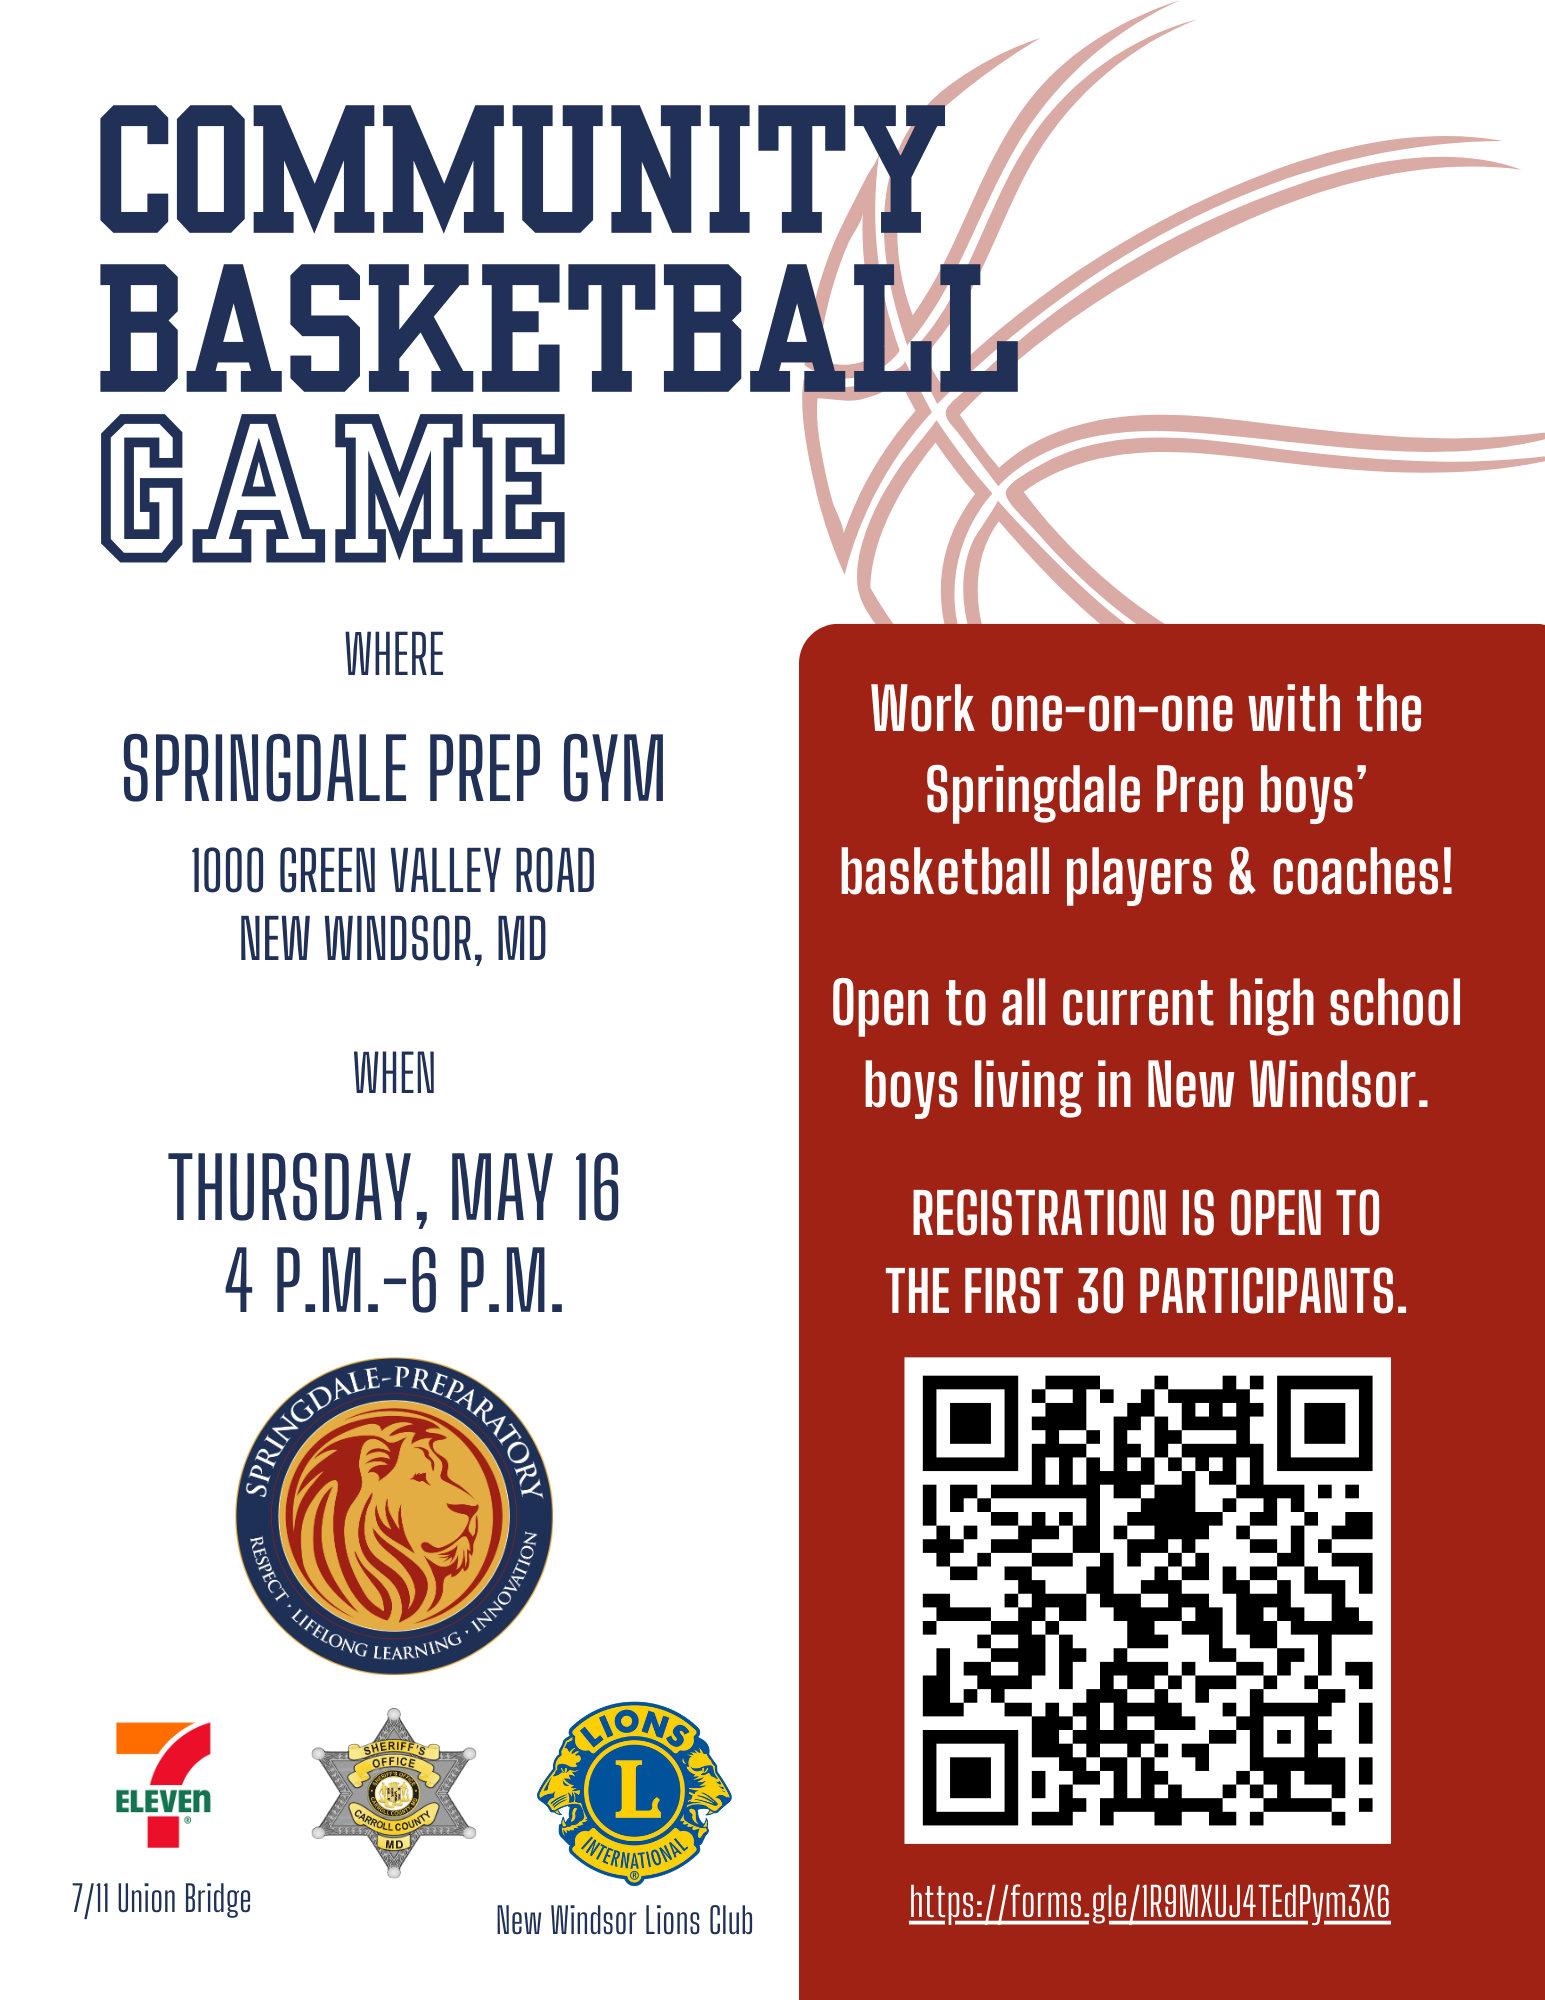 Springdale Community Basketball Game Information